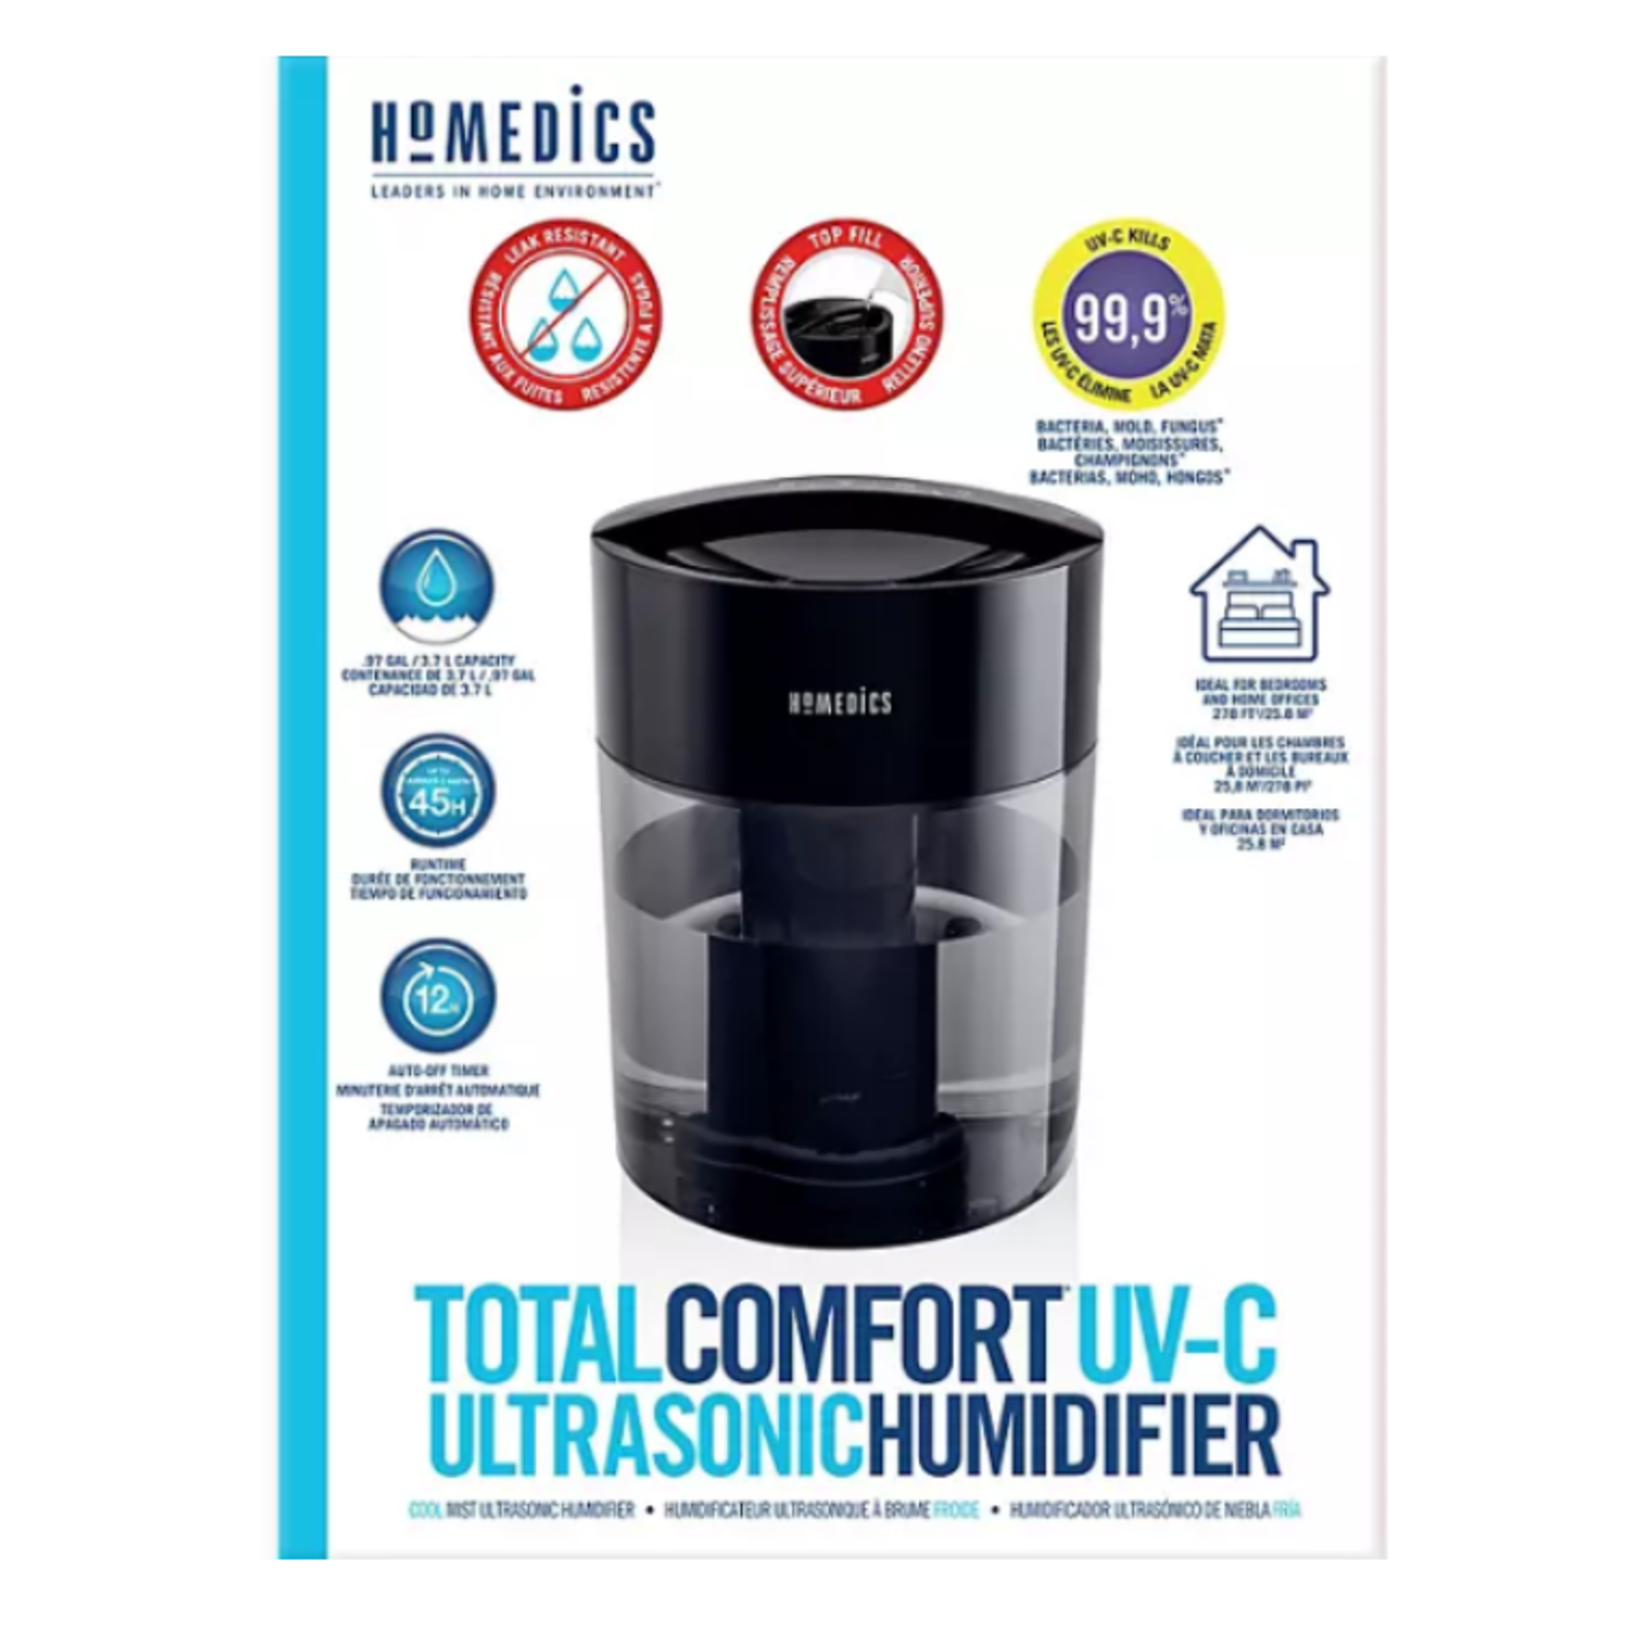 HoMedics Total Comfort UV-C Ultrasonic Humidifier